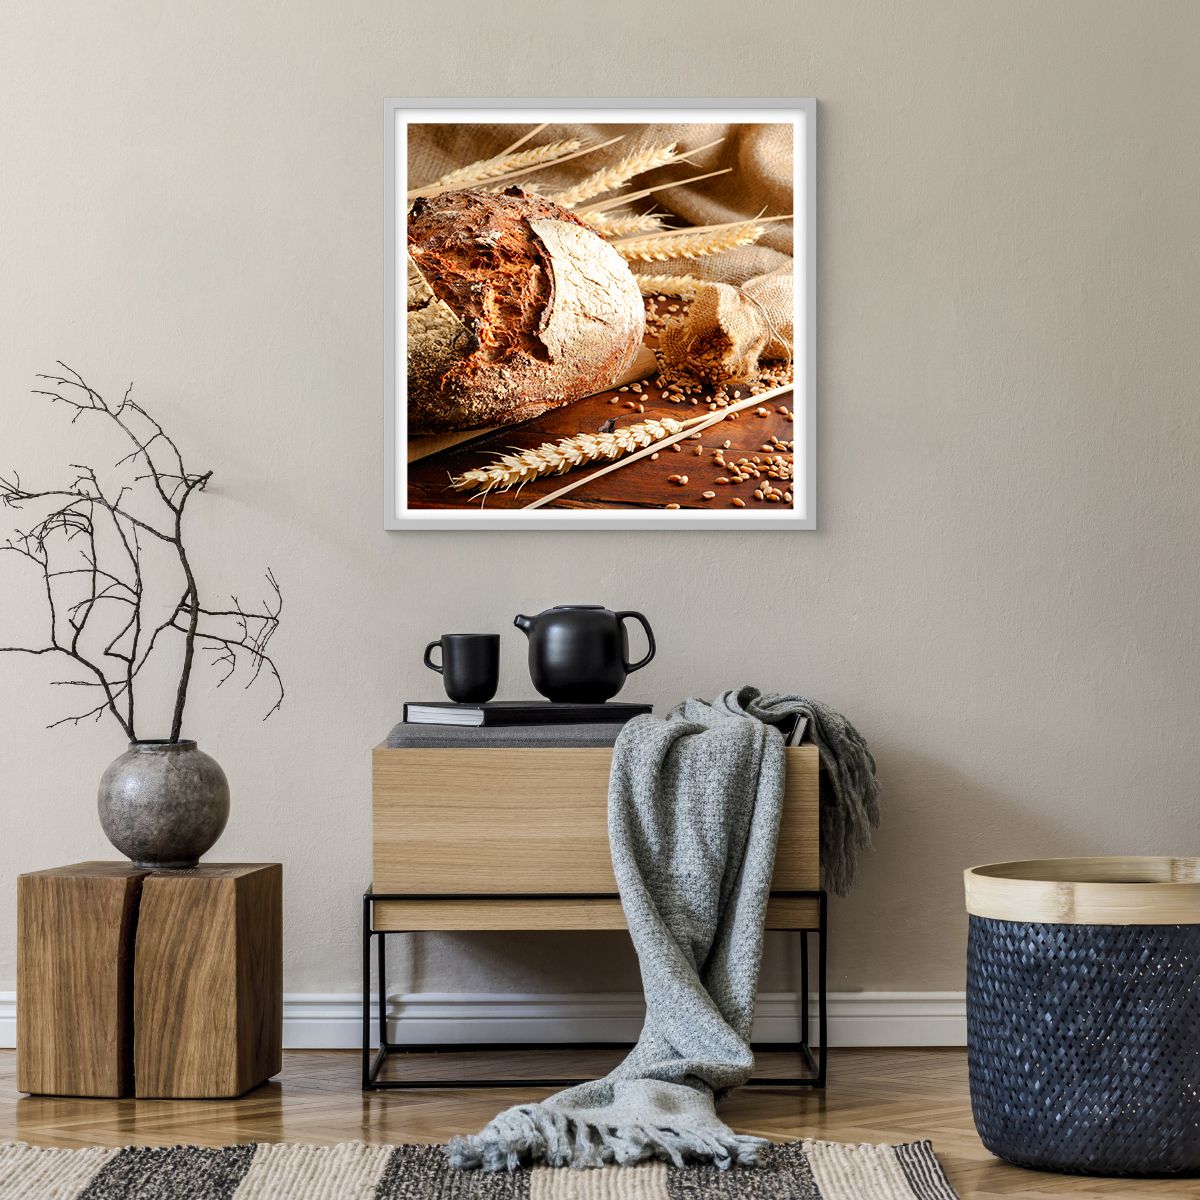 Poster in einem weißen Rahmen Brot, Poster in einem weißen Rahmen Weizenkörner, Poster in einem weißen Rahmen Gastronomie, Poster in einem weißen Rahmen Müsli, Poster in einem weißen Rahmen Brot